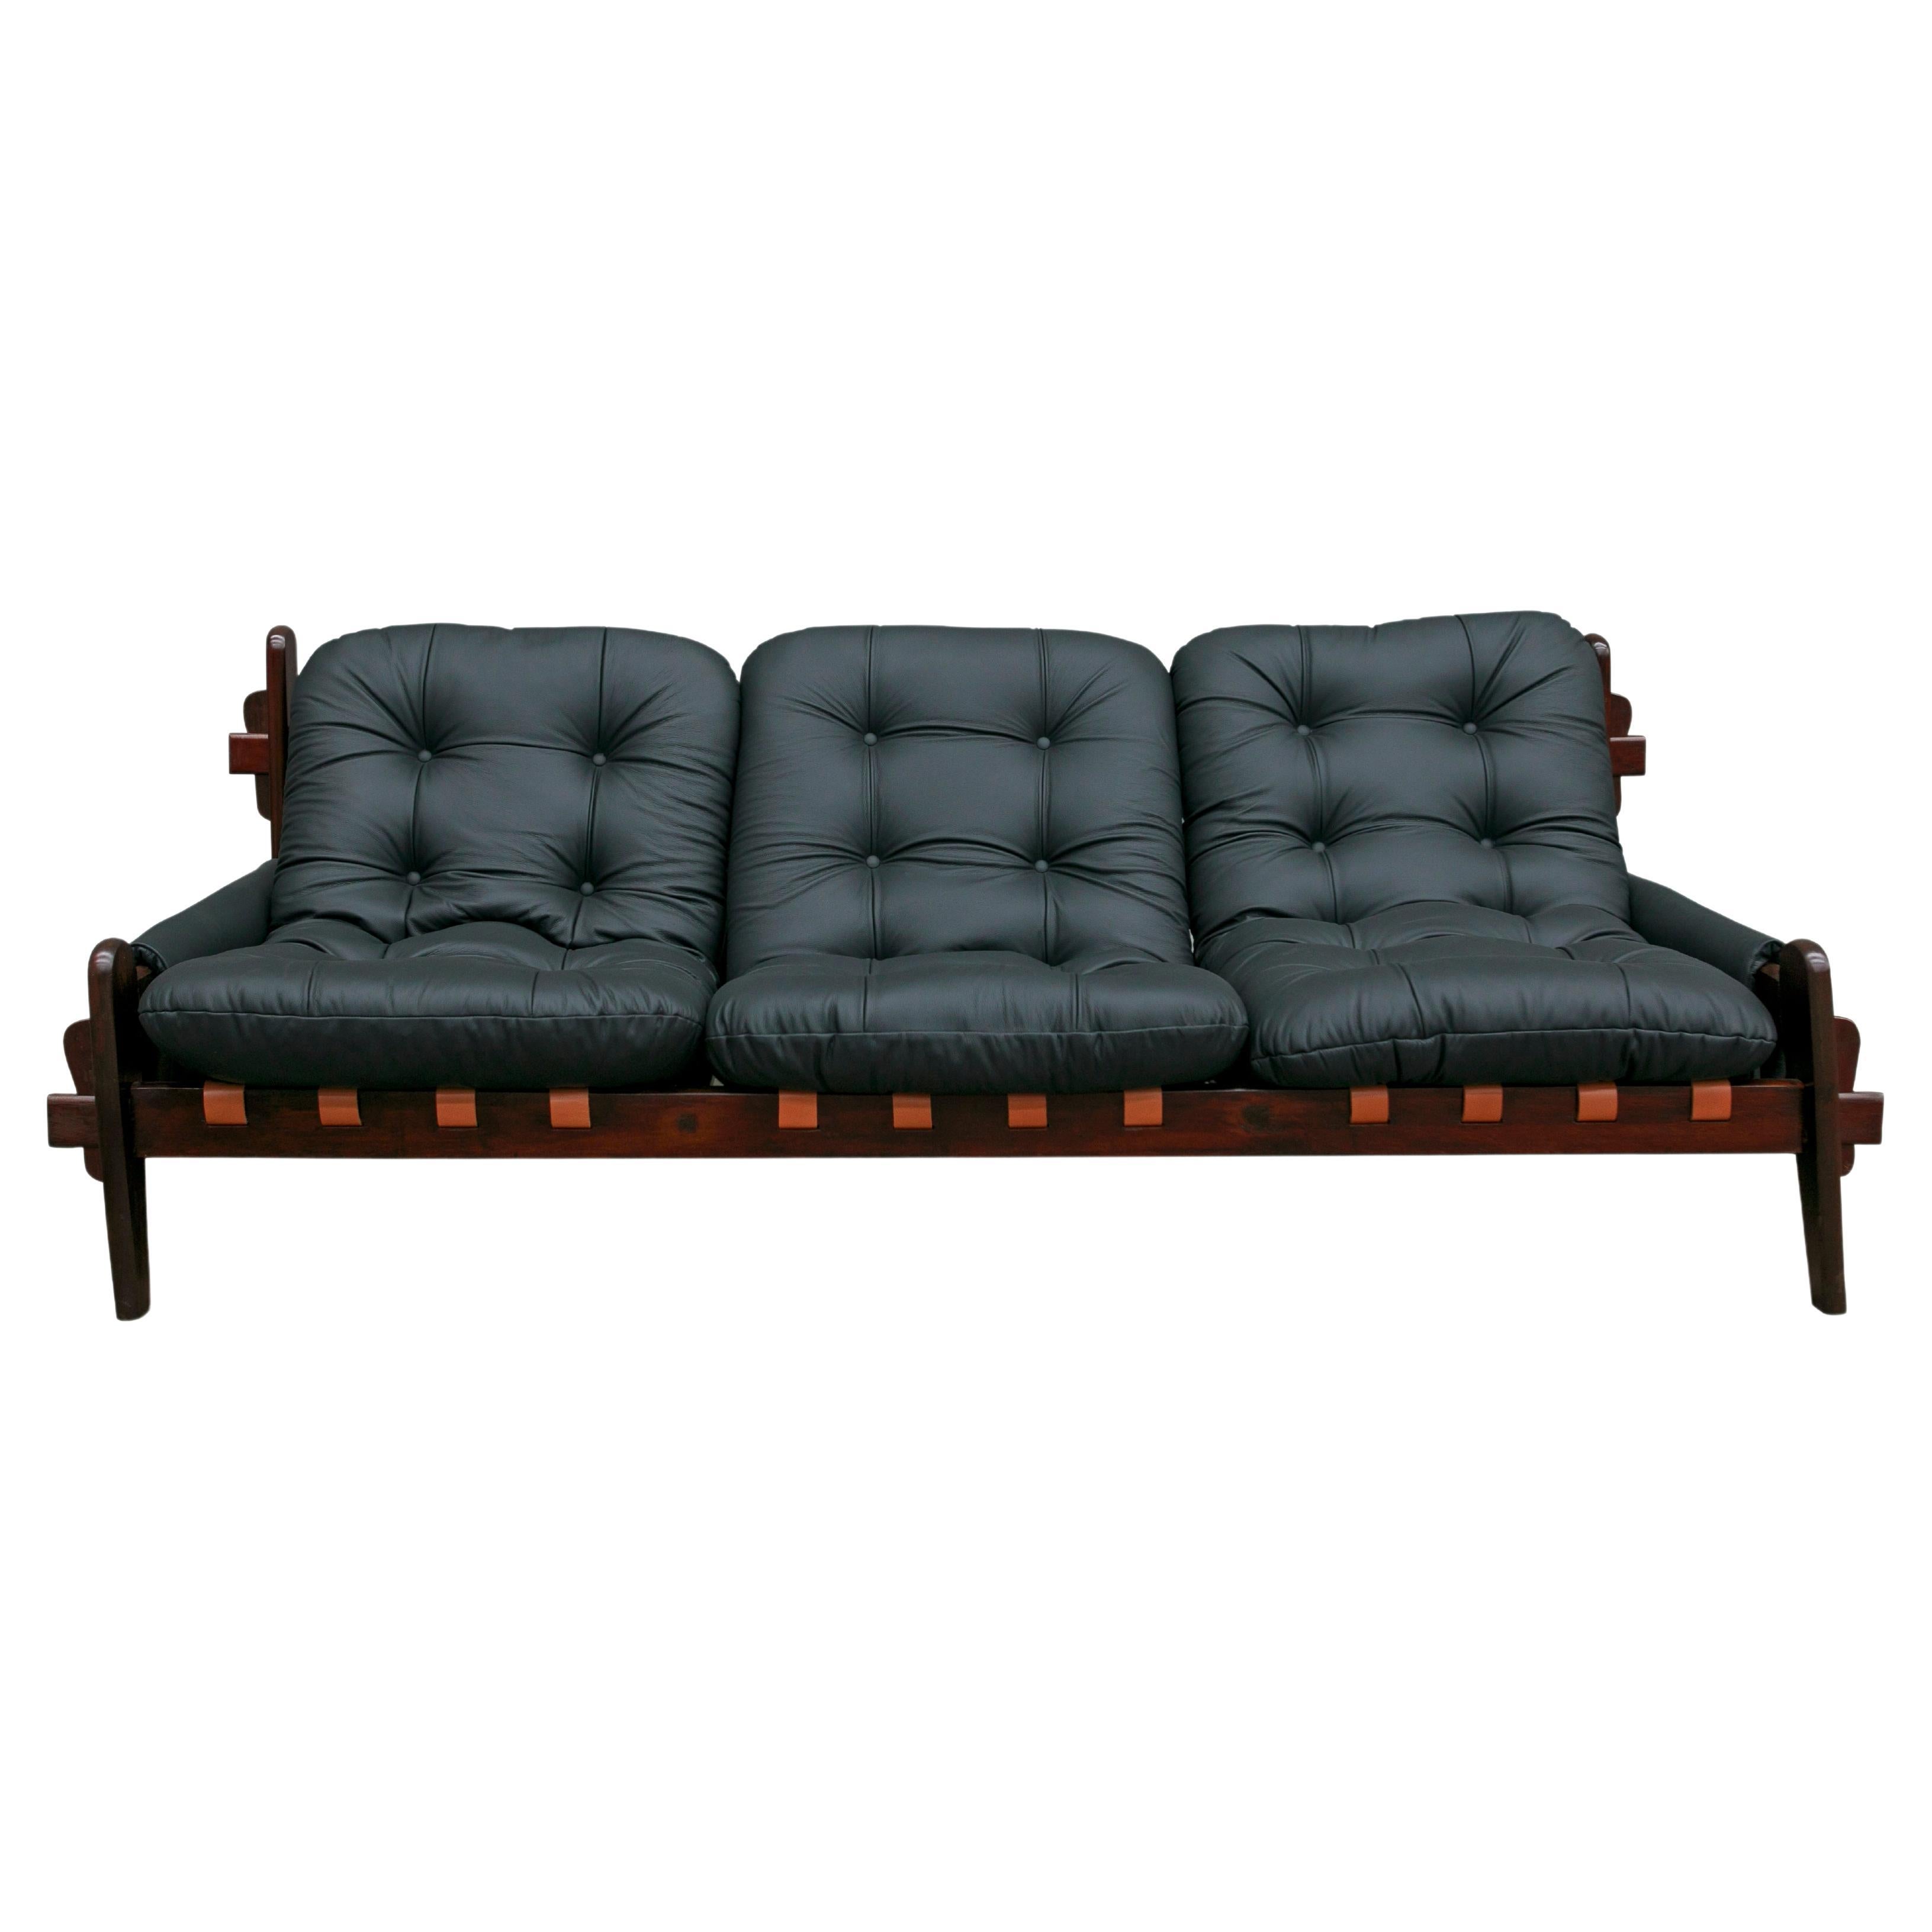 Dieses moderne brasilianische Sofa aus schwarzem Leder und Hartholz, das Jean Gillon in den siebziger Jahren entworfen hat, ist ab sofort erhältlich und ist einfach spektakulär!

Dieses wunderschöne, einzigartige Dreisitzer-Sofa verfügt über eine